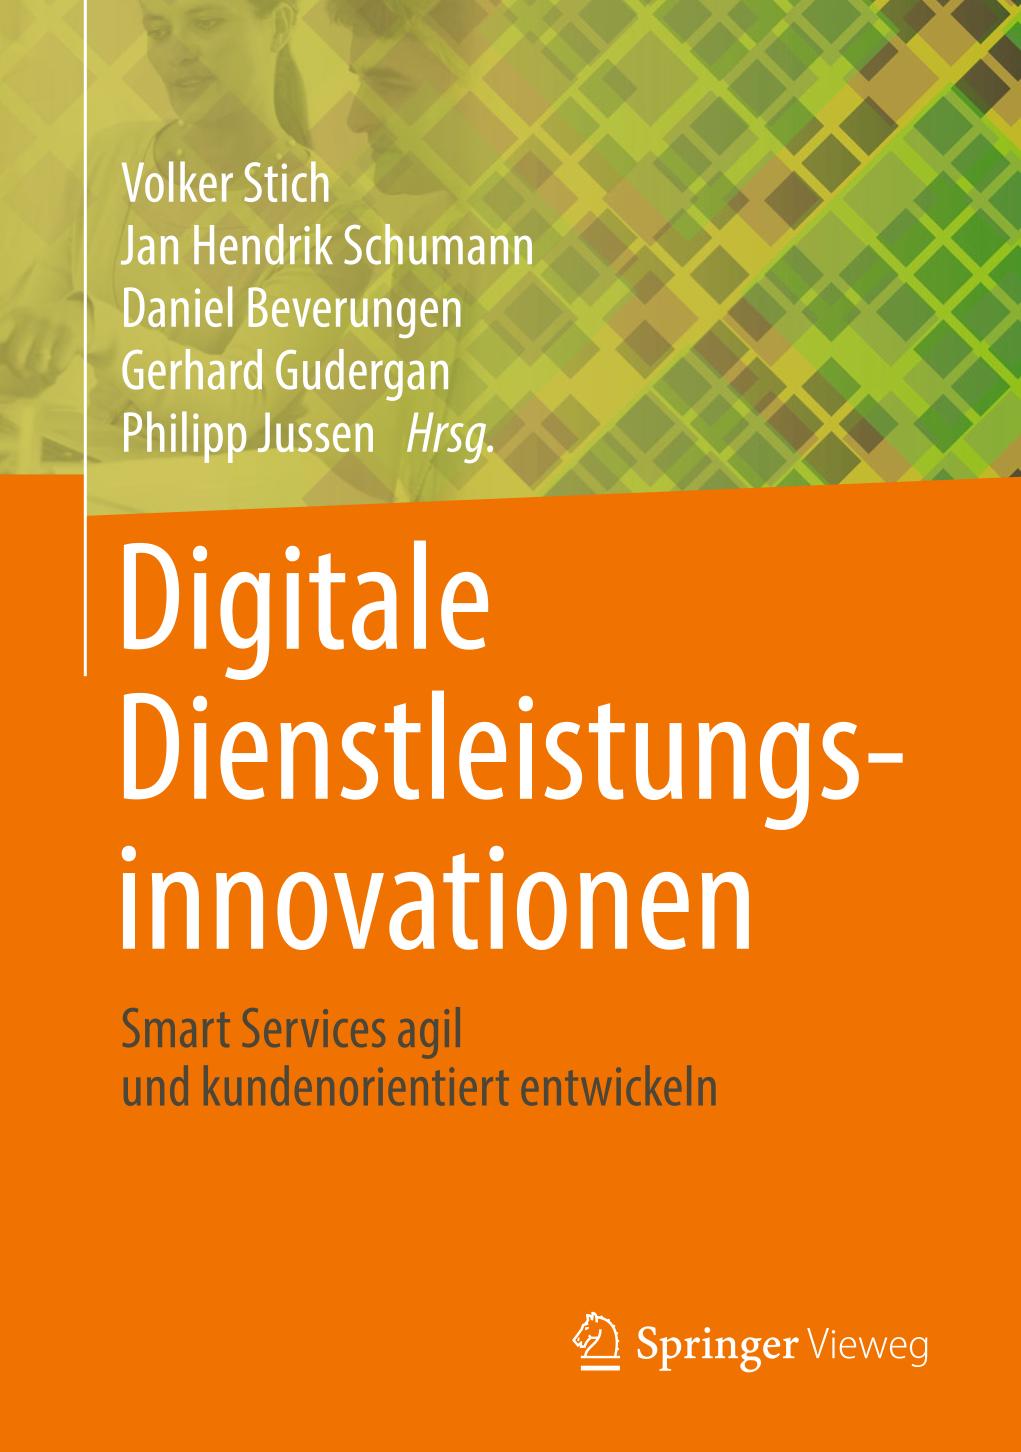 Digitale Dienstleistungsinnovationen Smart Services agil und kundenorientiert entwickeln